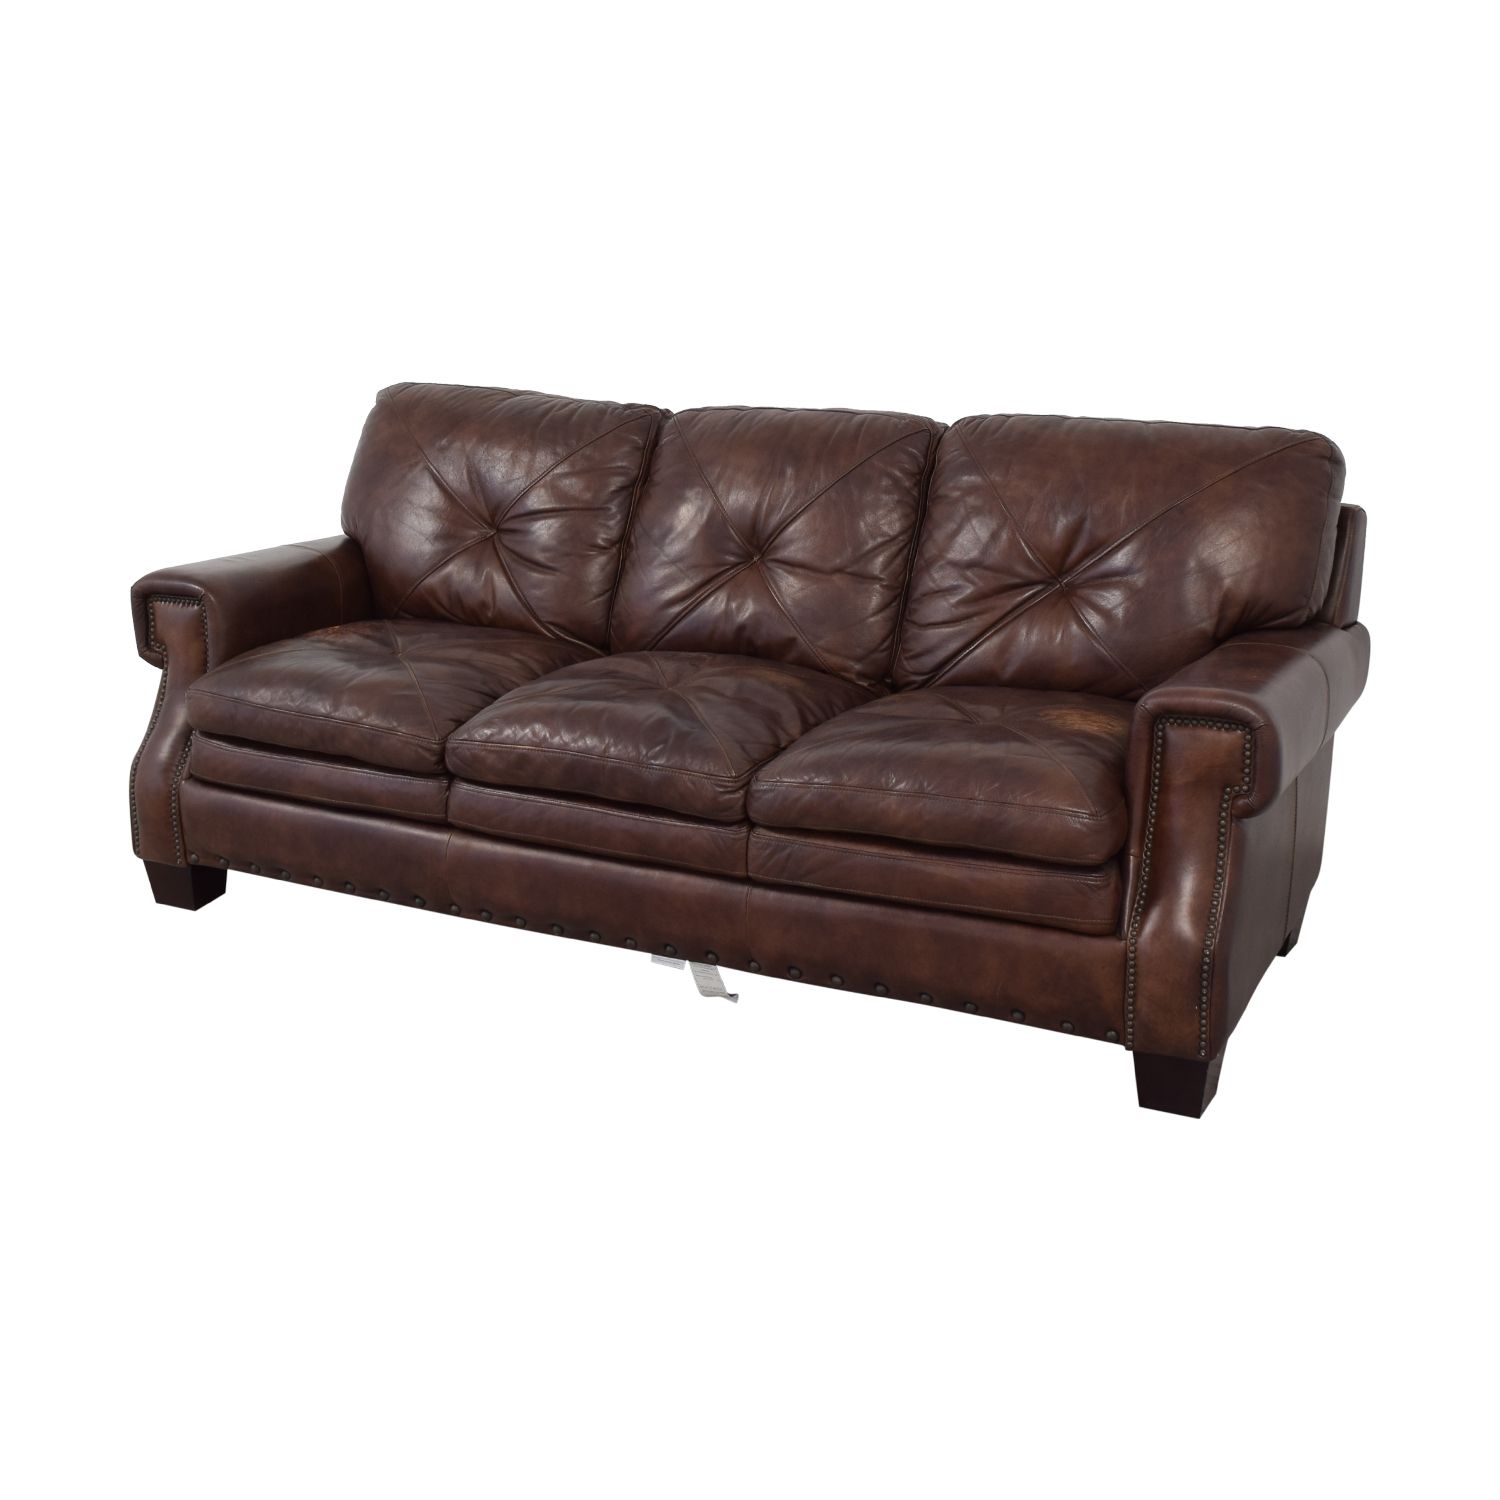 Bobs Furniture Leather Sofa : Trailblazer Gray Leather Regarding Trailblazer Gray Leather Power Reclining Sofas (Photo 5 of 15)